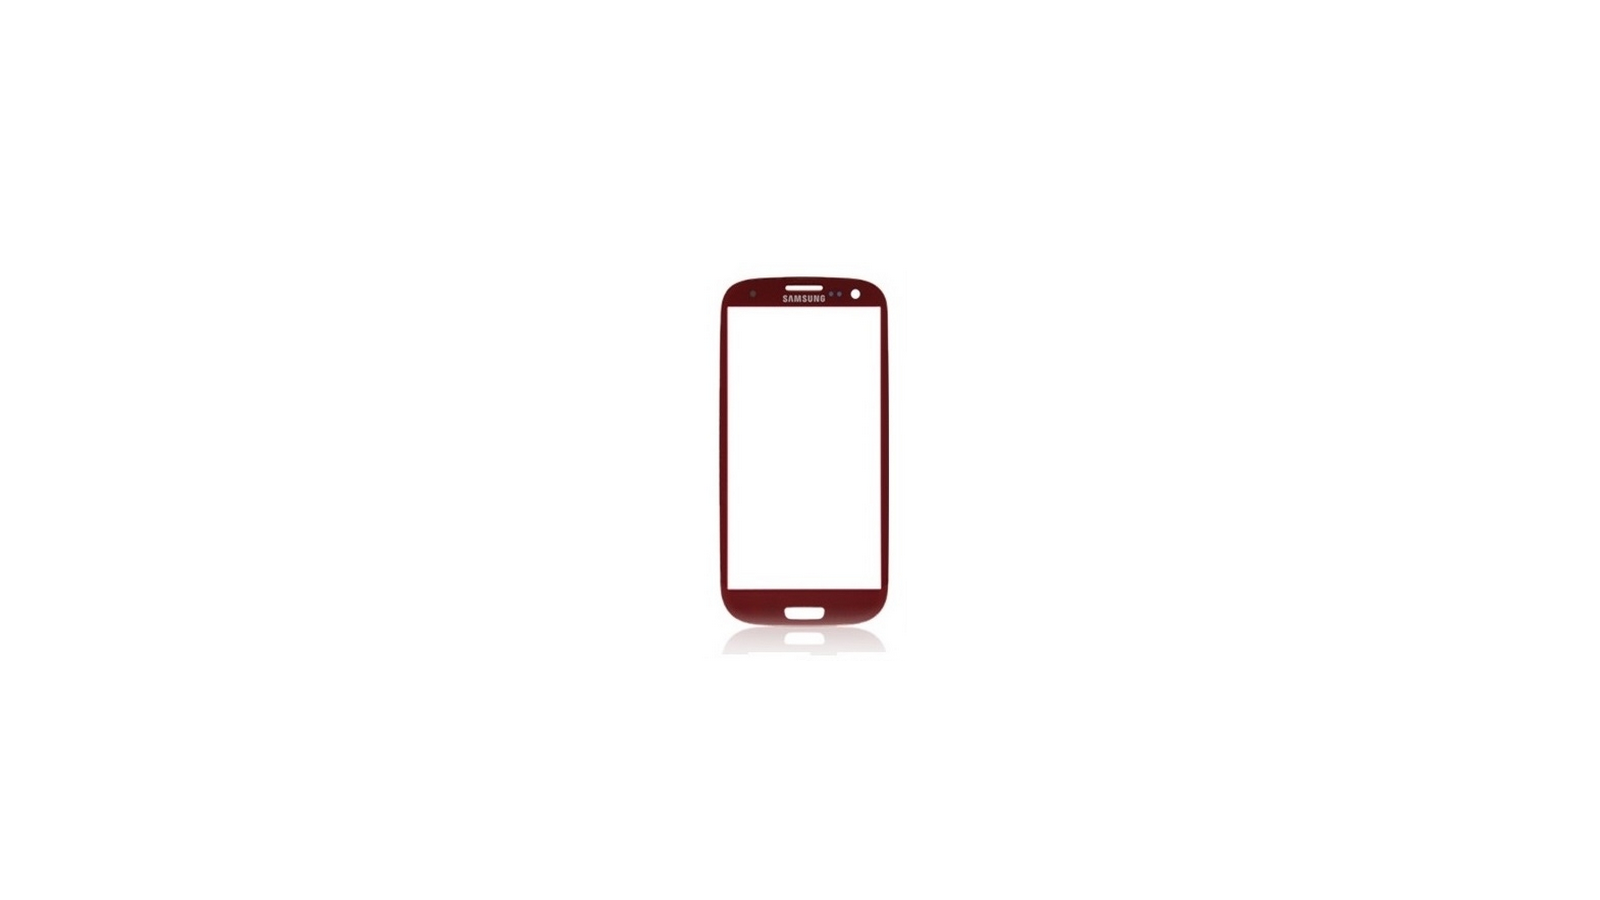 Vetro per touch screen Samsung Galaxy S3 i9300 rosso